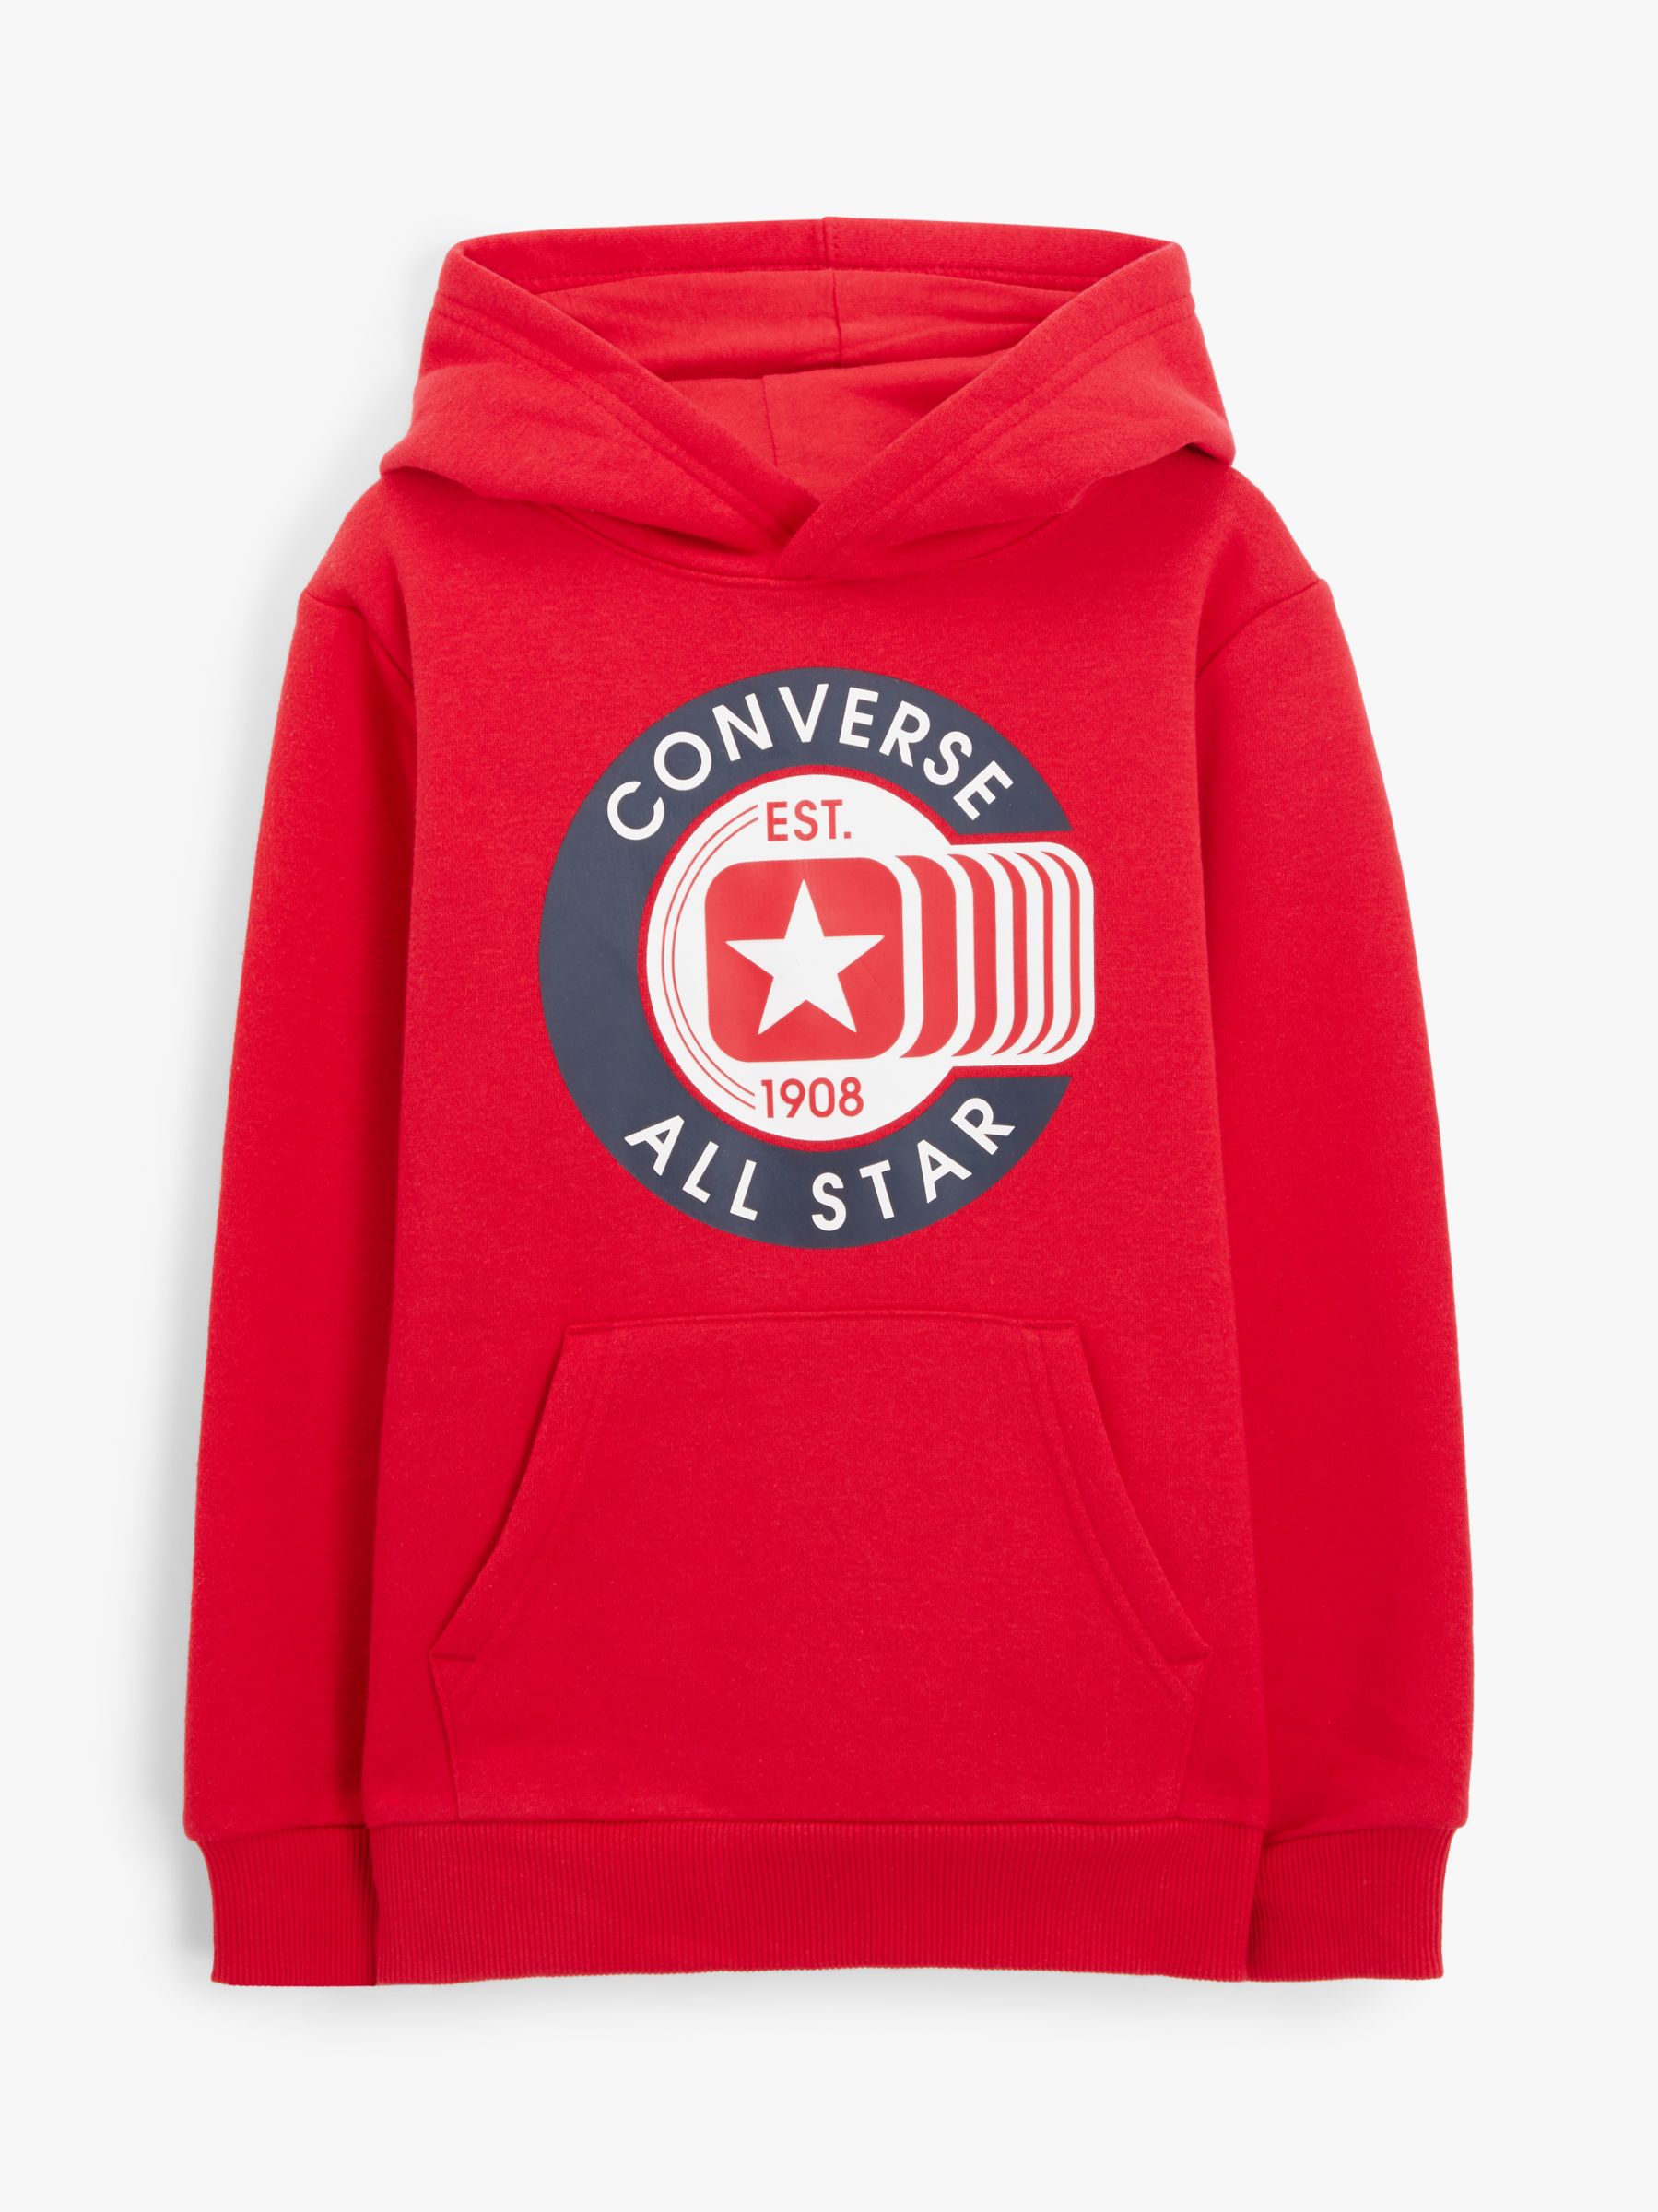 converse baby hoodie